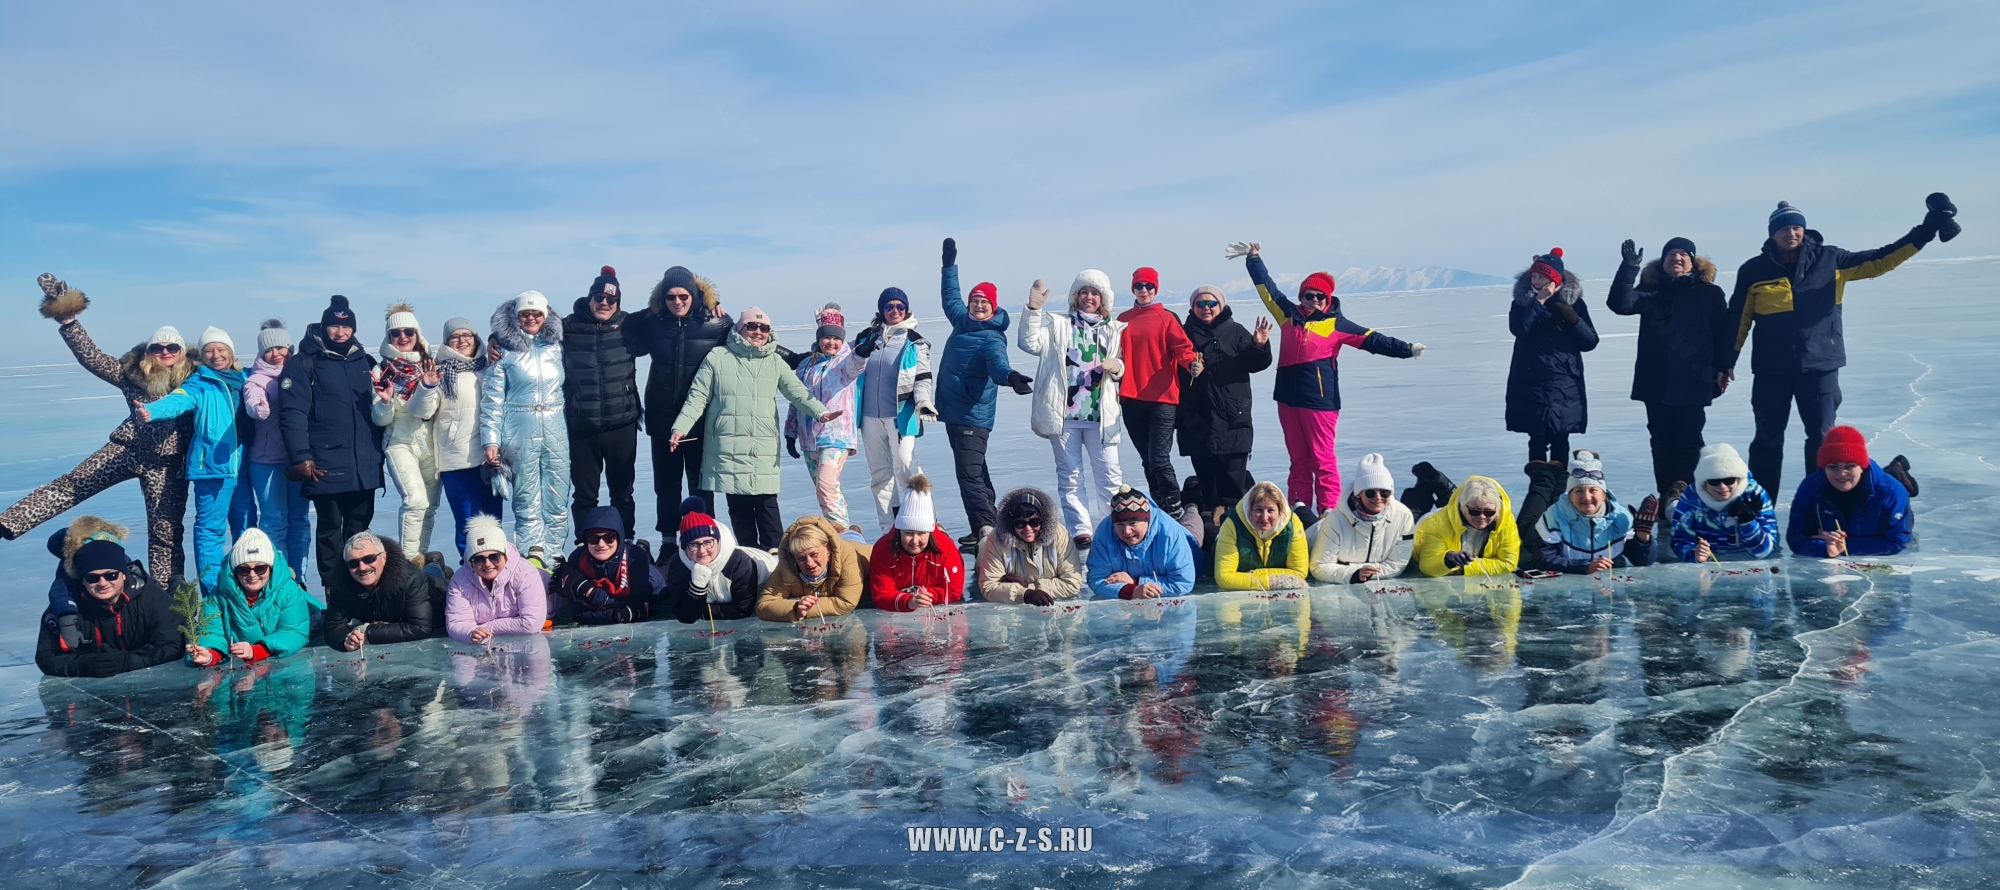 Захватывающие моменты семинара для нотариусов на берегу озера Байкал - вдохновляющие фотографии для продвижения вашего мероприятия!